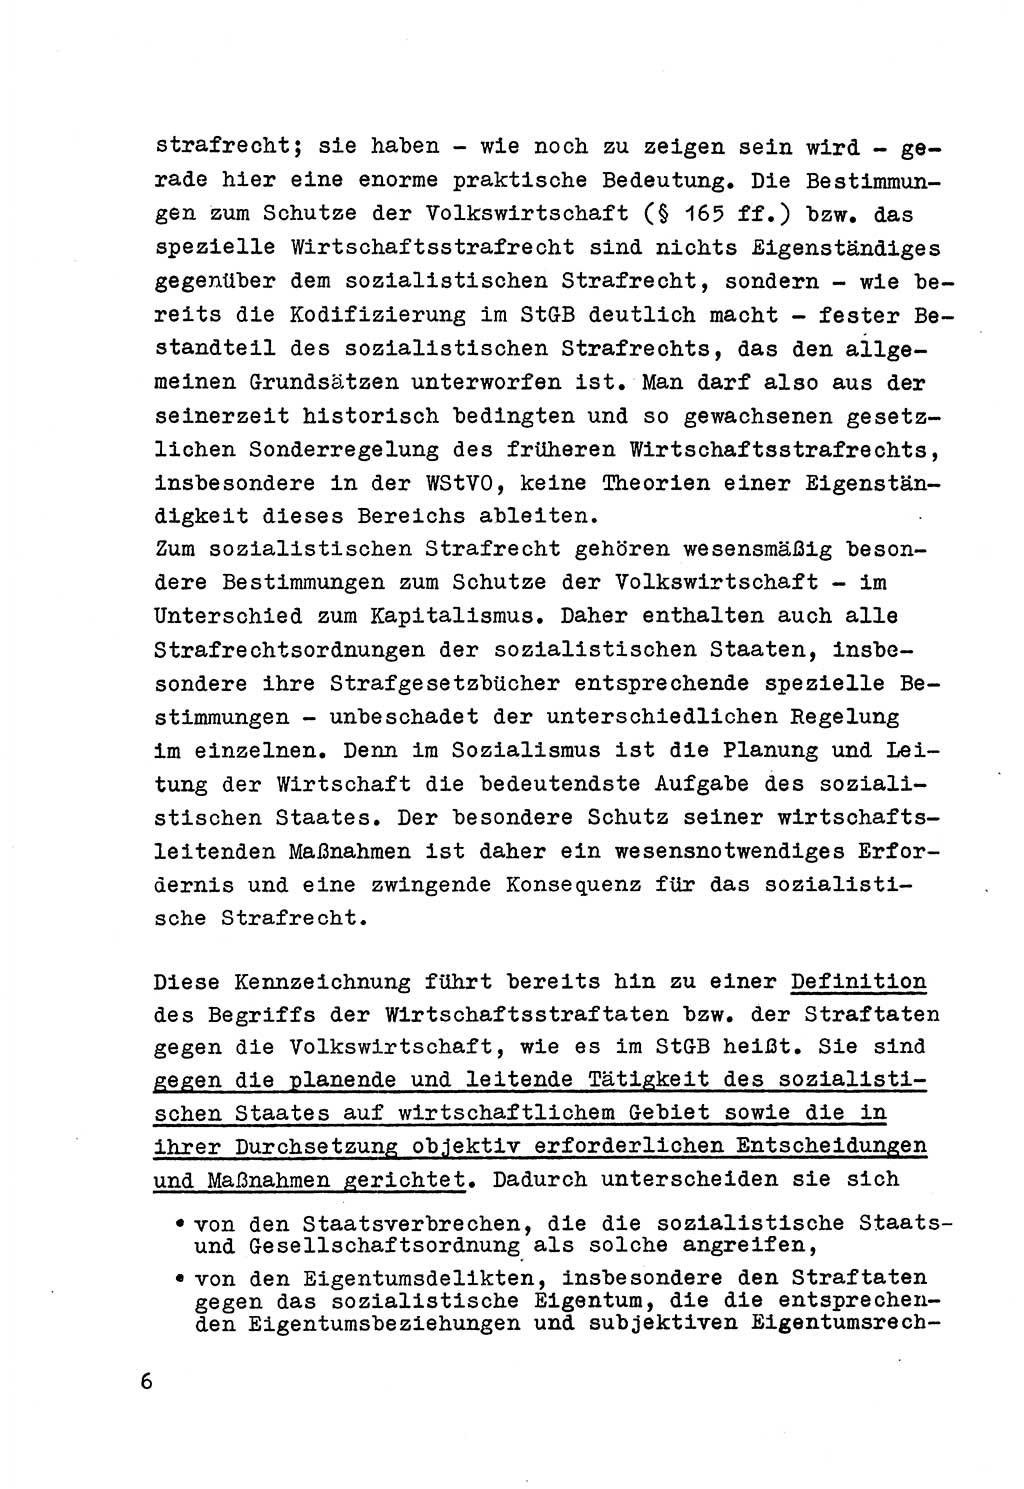 Strafrecht der DDR (Deutsche Demokratische Republik), Besonderer Teil, Lehrmaterial, Heft 6 1970, Seite 6 (Strafr. DDR BT Lehrmat. H. 6 1970, S. 6)